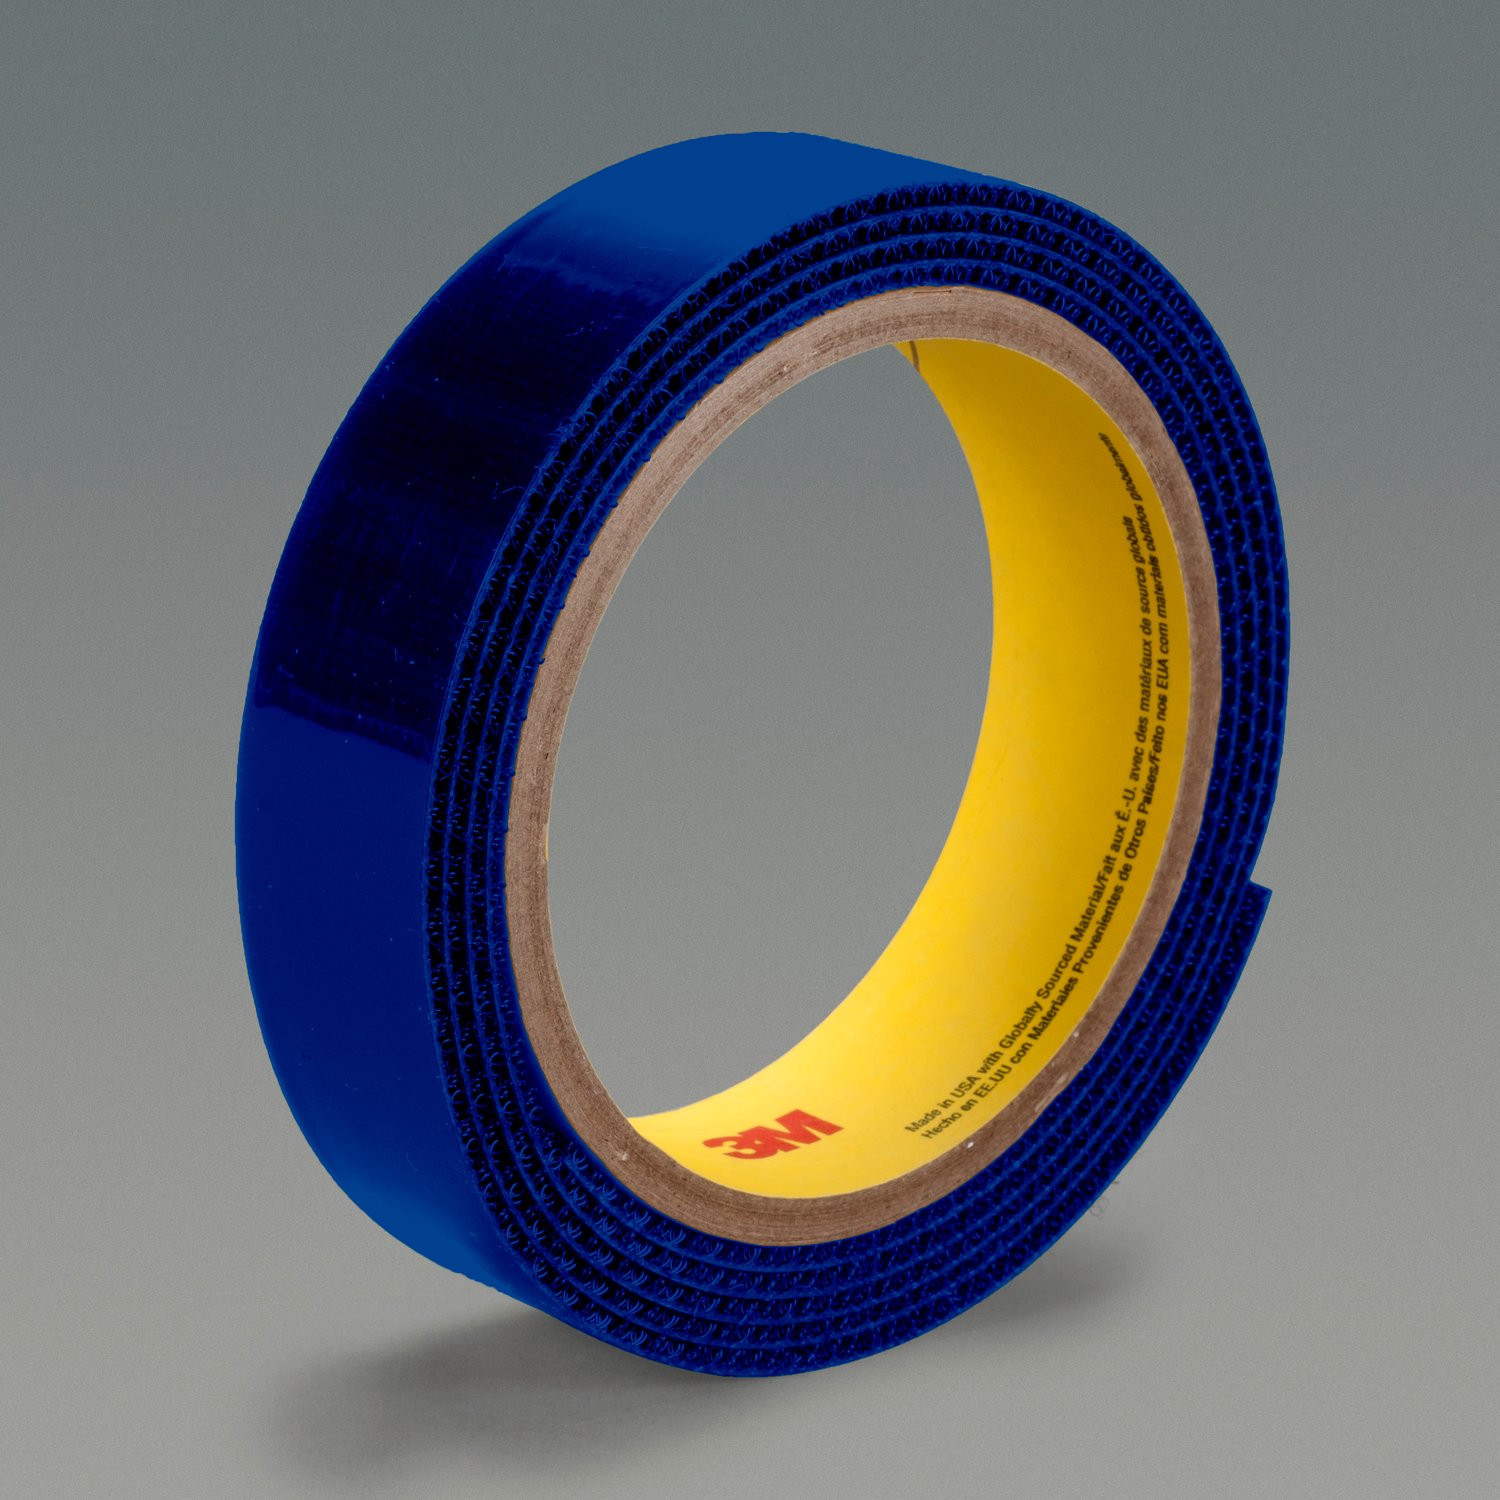 7010339839 - 3M Flame Resistant Loop Fastener SJ3418FR, Royal Blue, 3/4 in x 50 yd,
16 per case